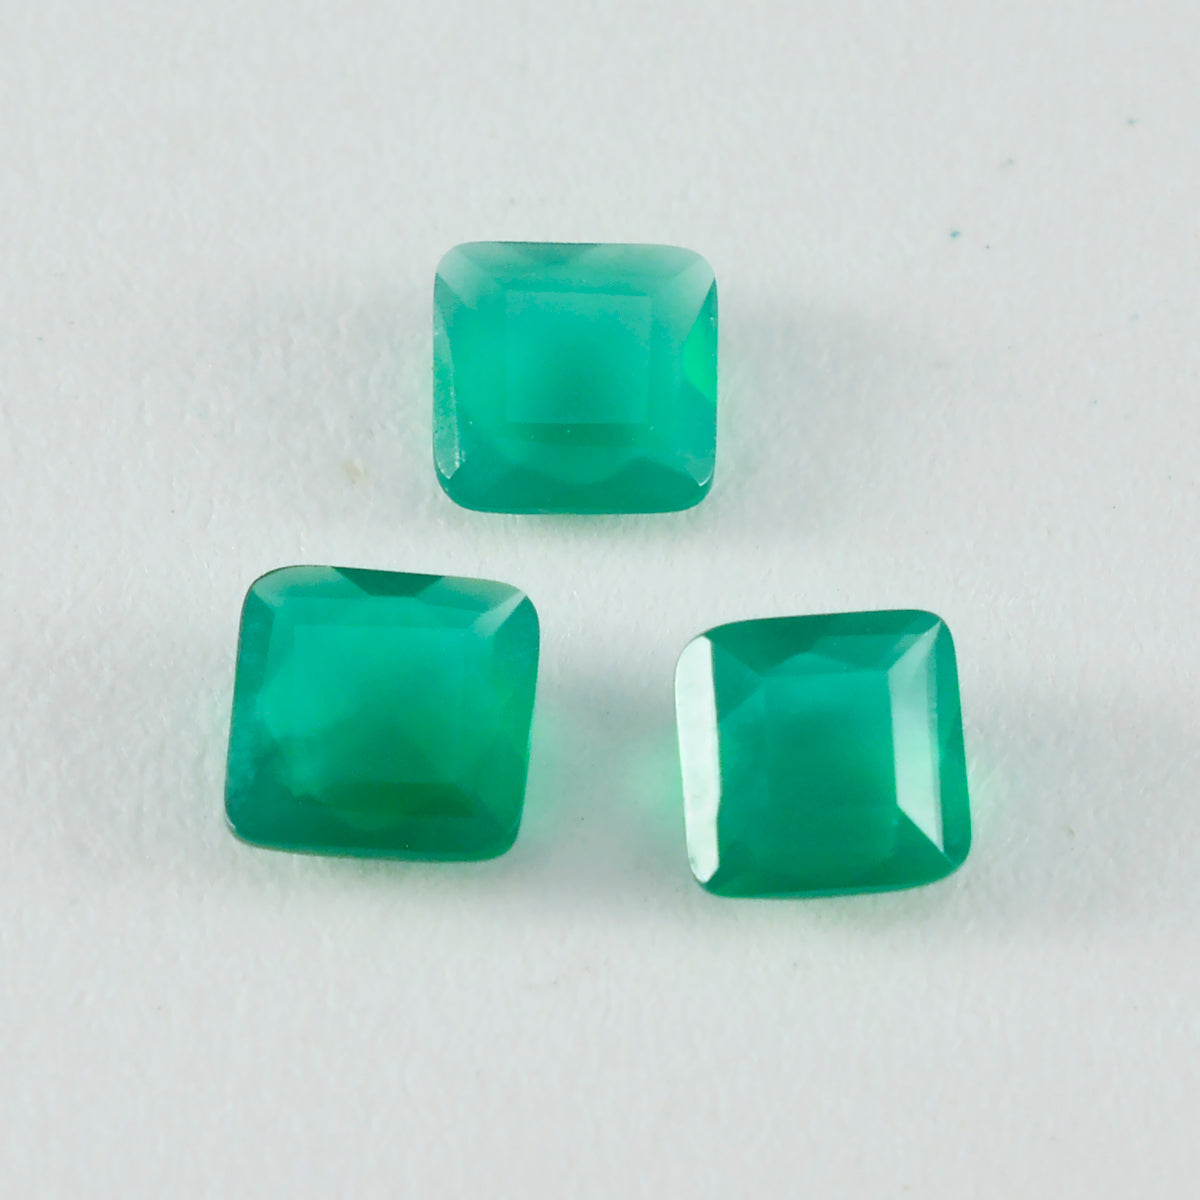 Riyogems 1 Stück natürlicher grüner Jaspis, facettiert, 12 x 12 mm, quadratische Form, ein hochwertiger, loser Edelstein